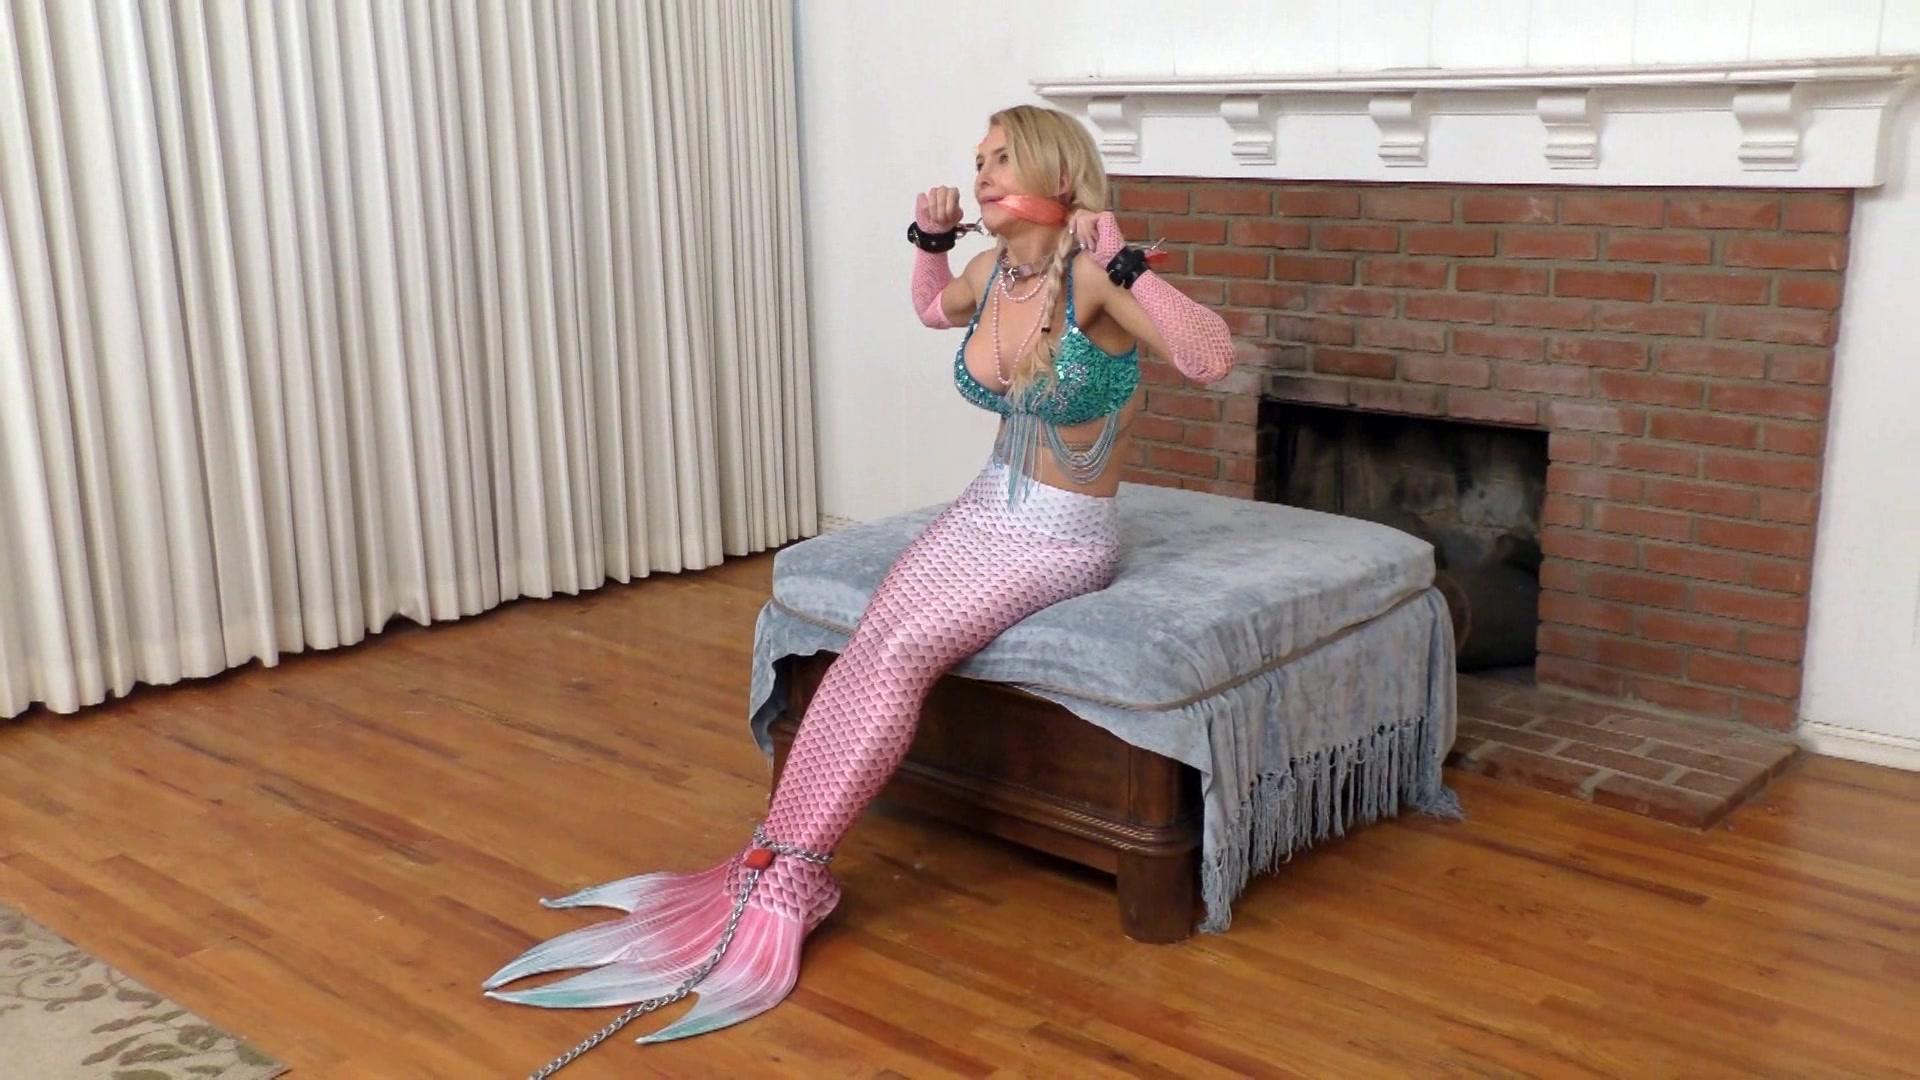 Mermaid bondage stories